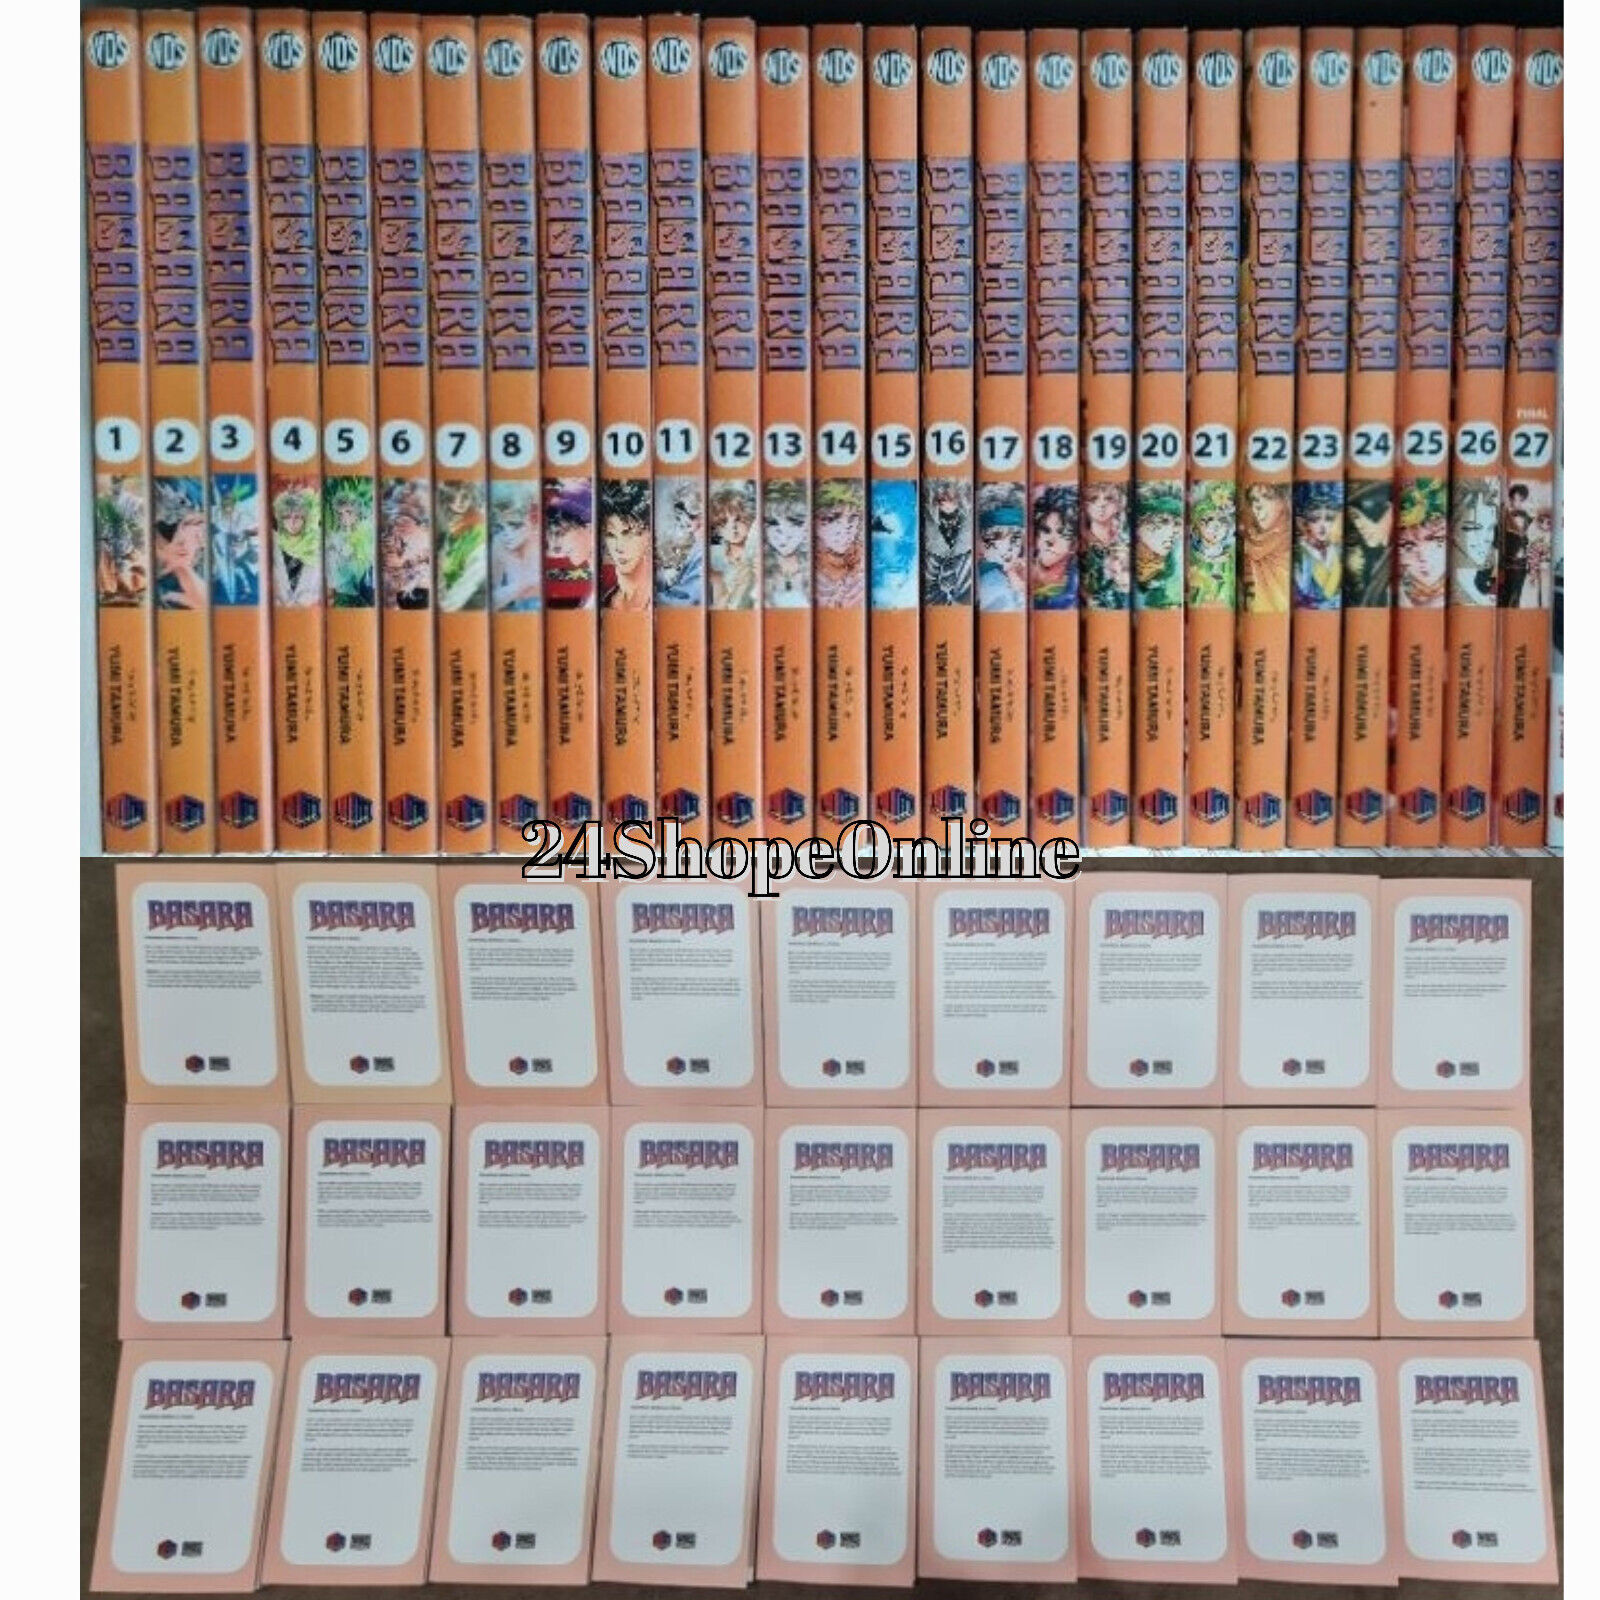 BASARA Manga by Yumi Tamura Volume 1-27 (END) English Version Comic Book Set